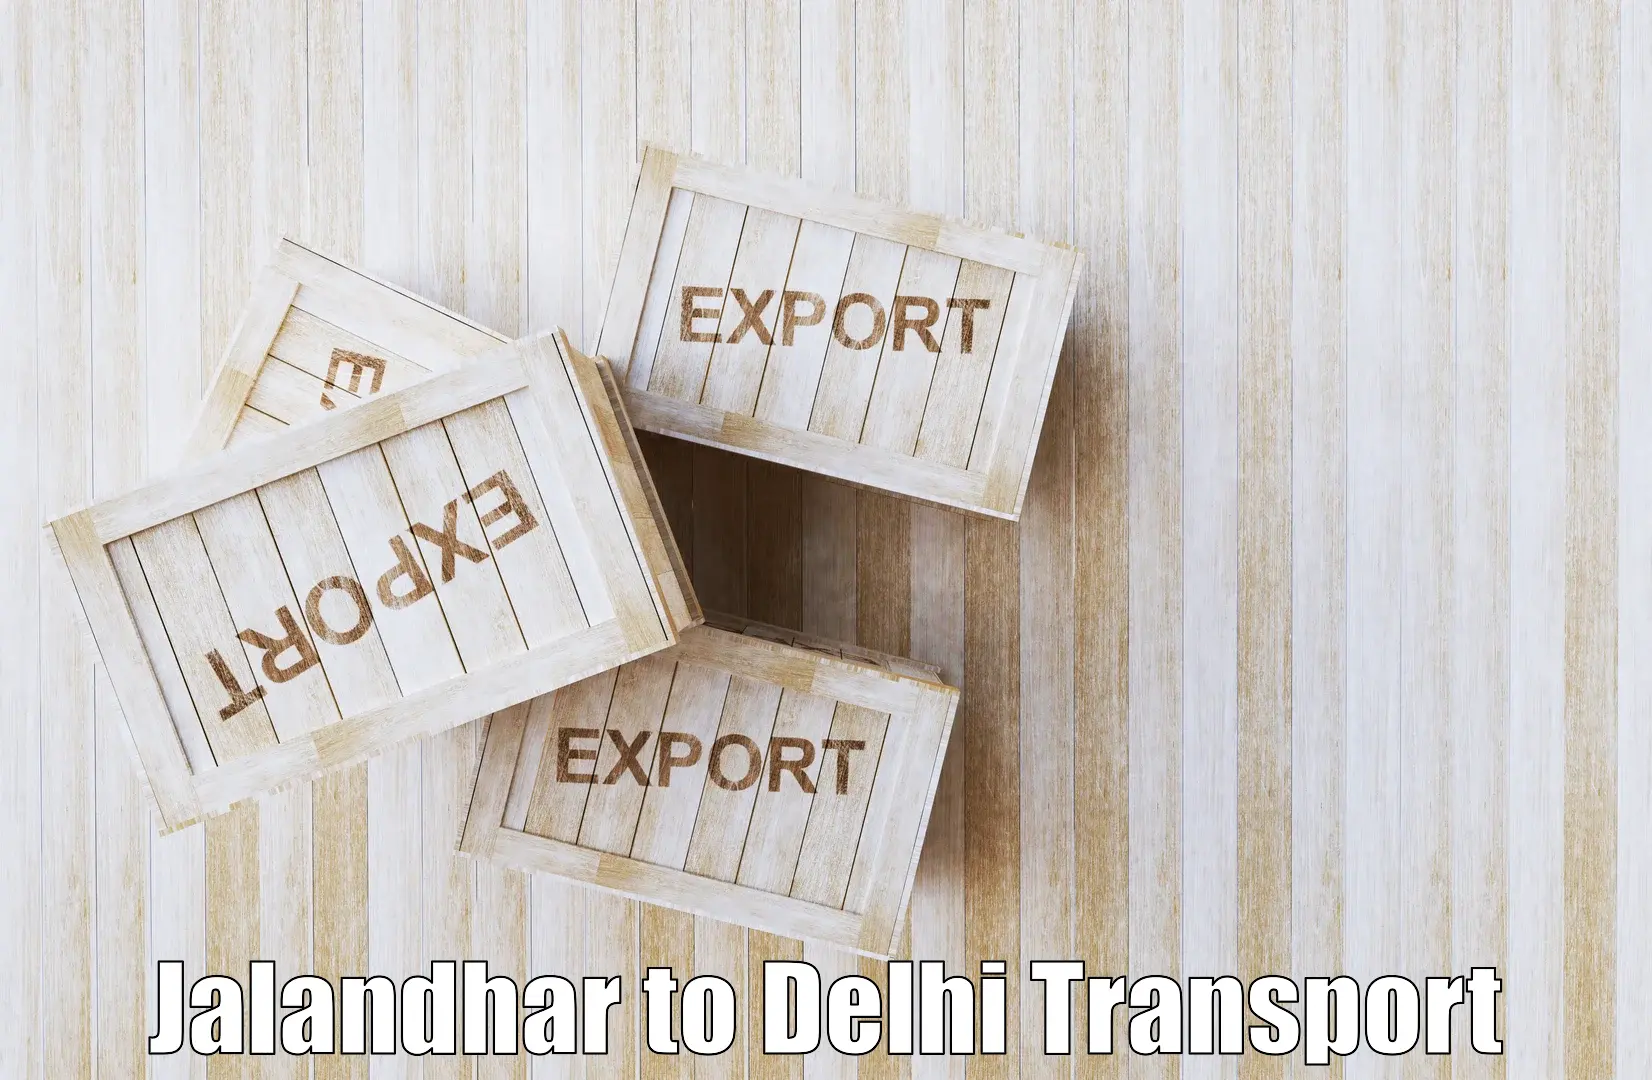 Online transport booking Jalandhar to Indraprastha